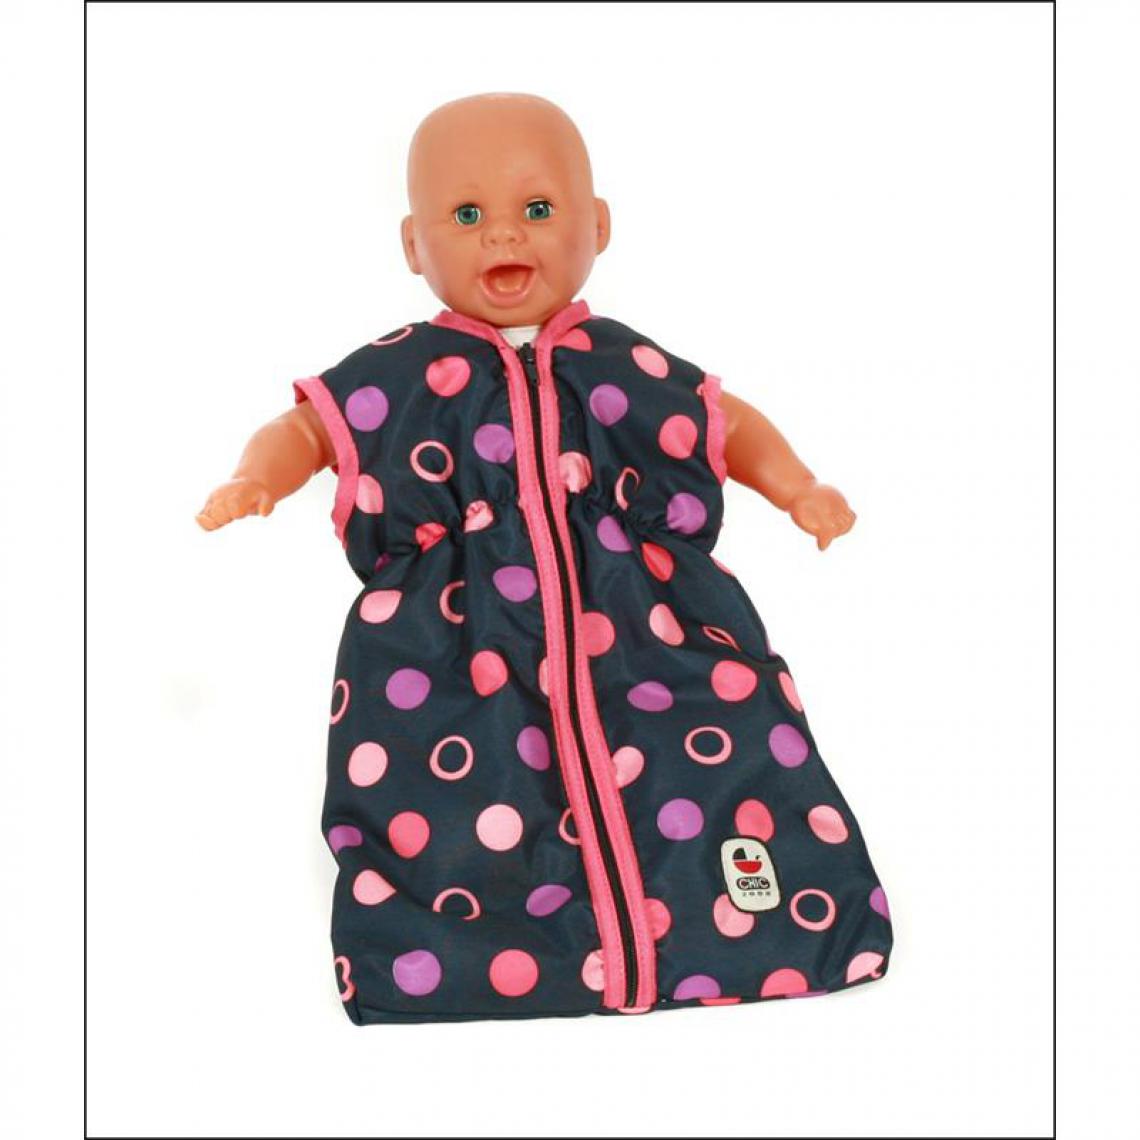 Bayer Chic 2000 - Bayer Chic 2000 792 20 - Sac de couchage pour poupées - Corail - Maisons de poupées